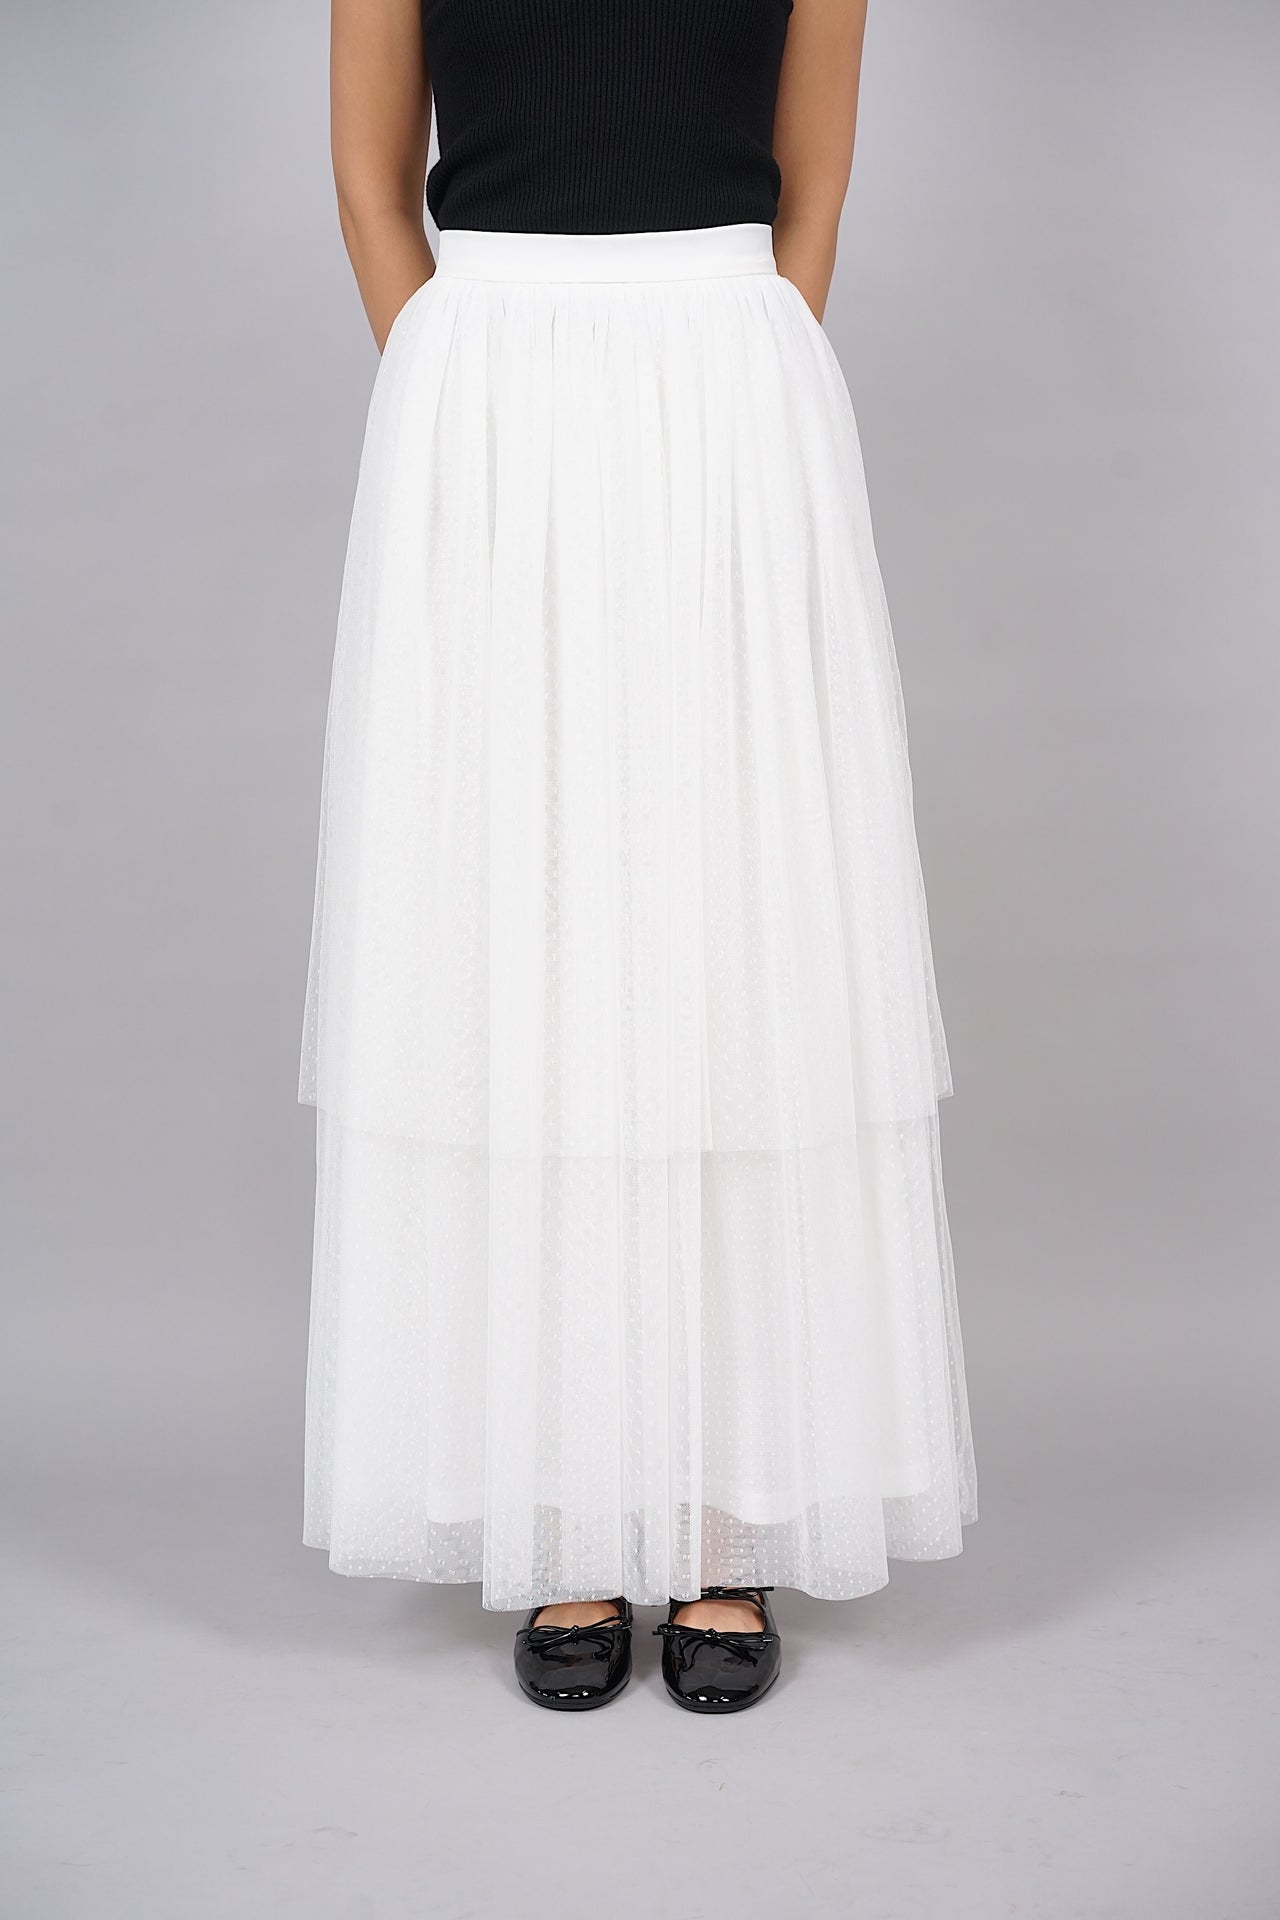 Christin Tulle Skirt in White